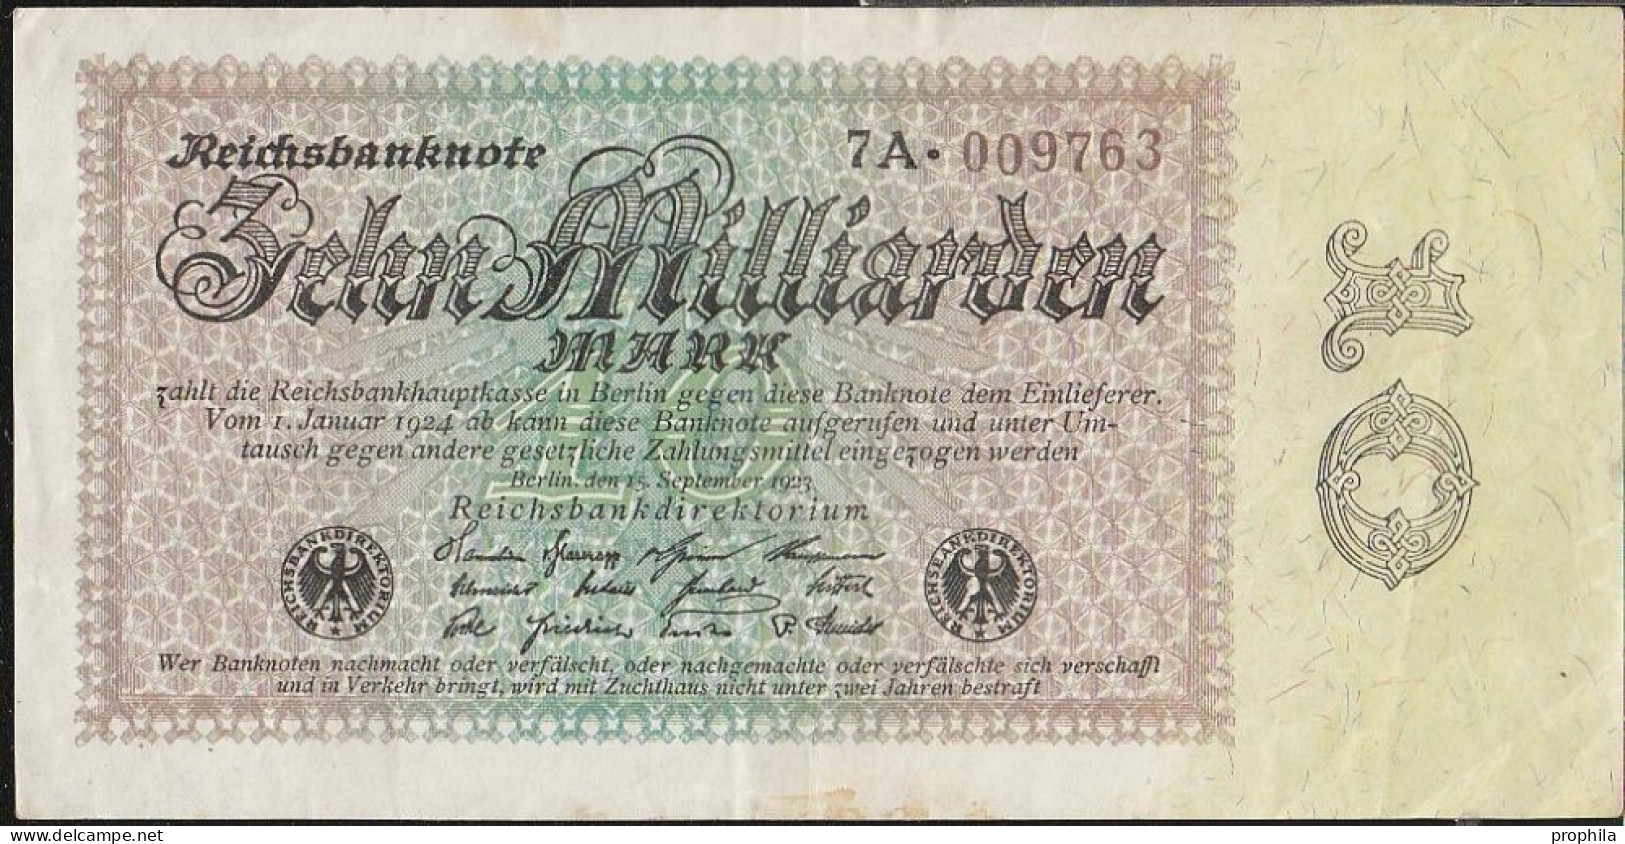 Deutsches Reich Rosenbg: 113c Wasserzeichen Disteln Stark Gebraucht (IV) 1923 10 Milliarden Mark - 10 Mrd. Mark